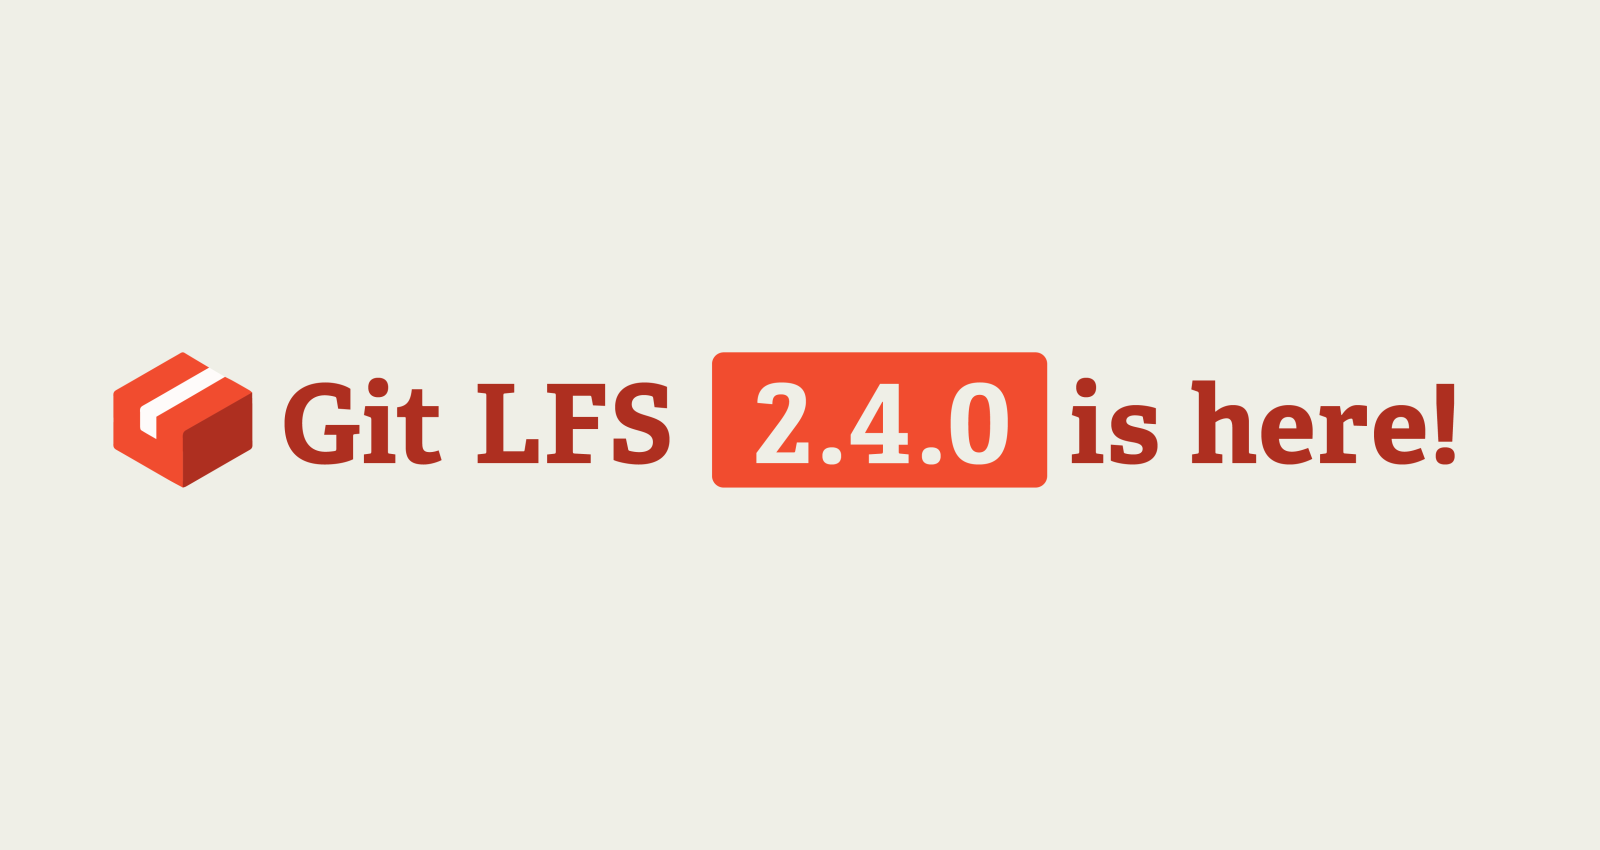 Git LFS 2.4.0 released